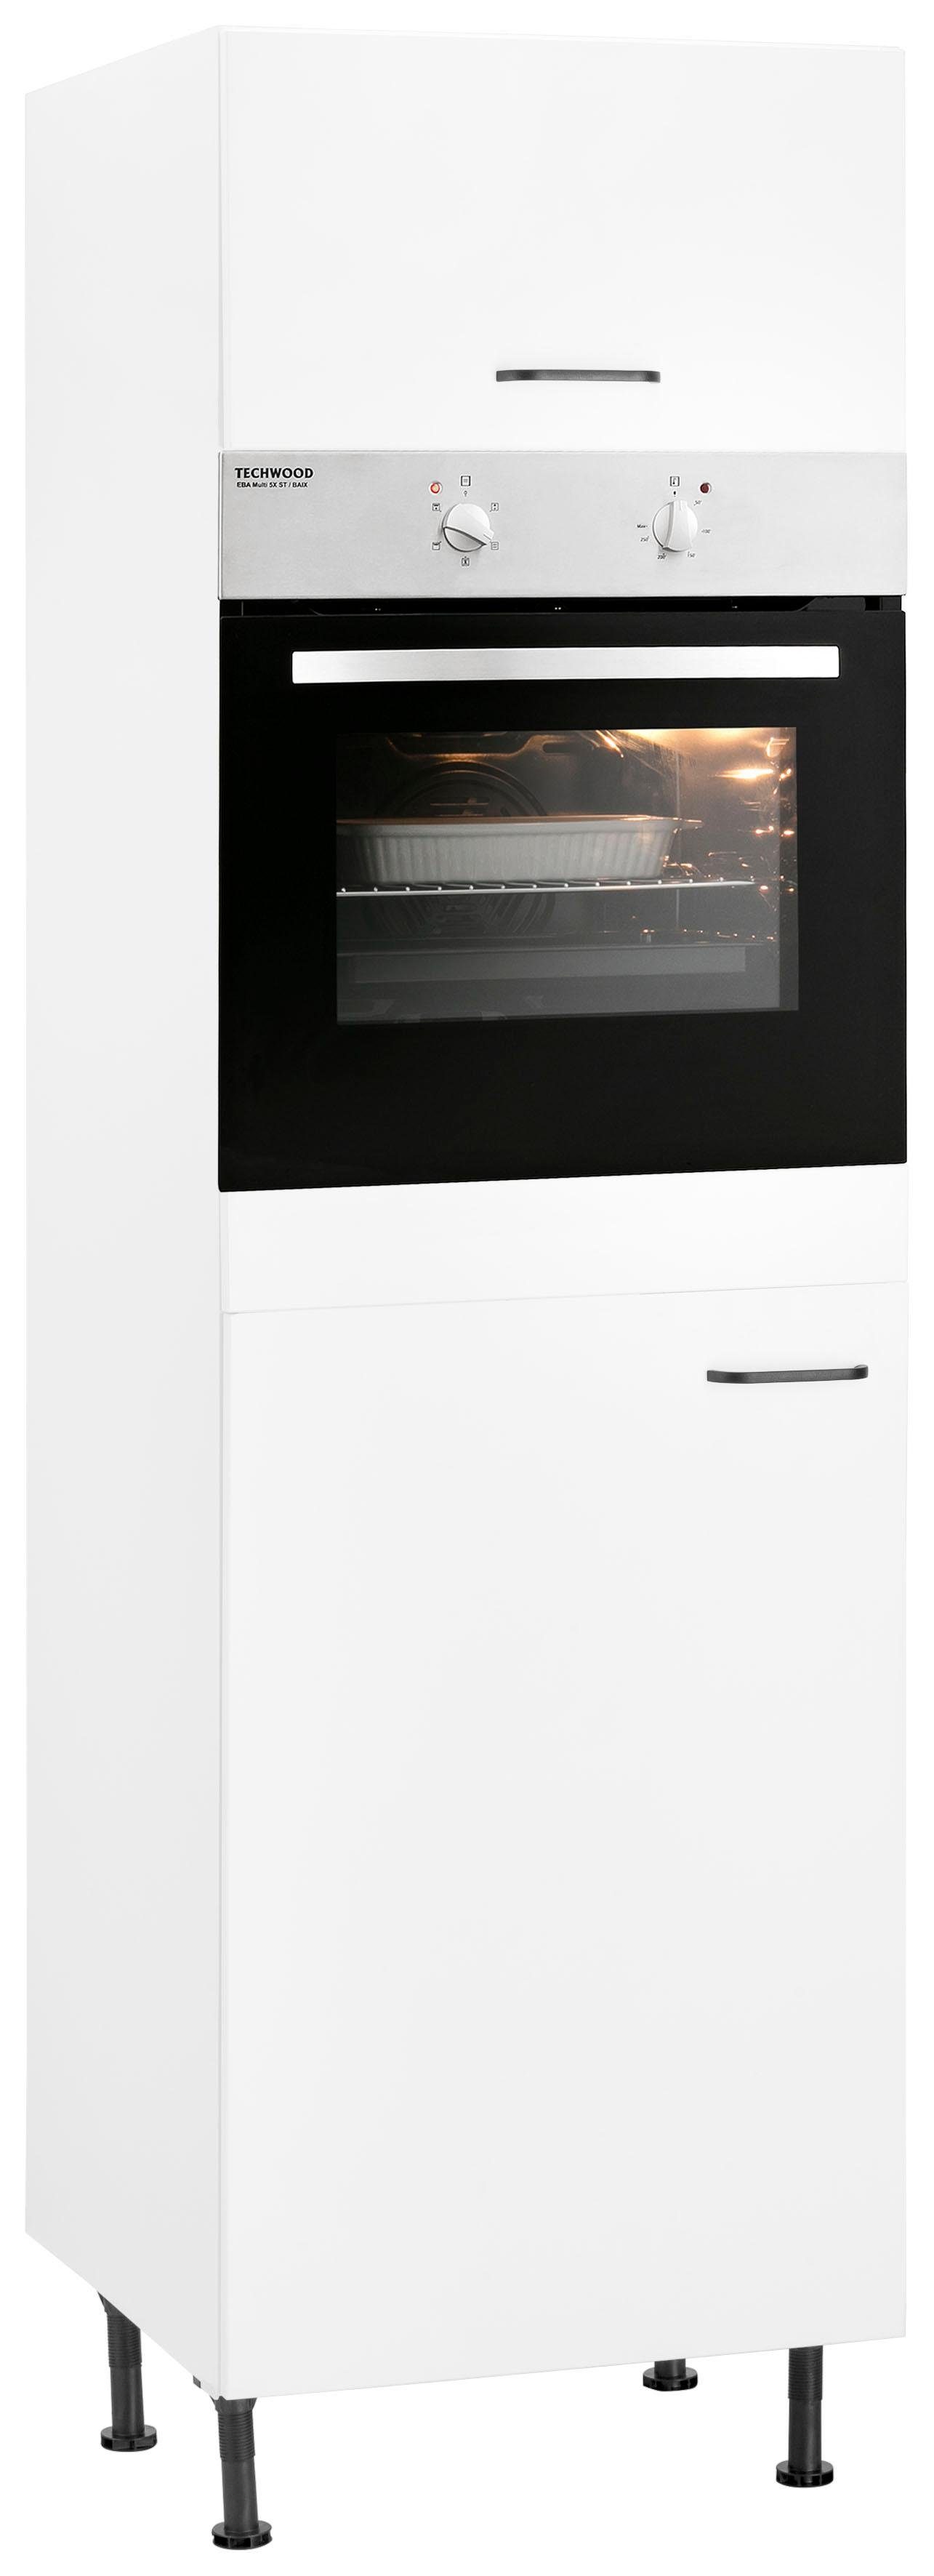 OPTIFIT Oven/koelkastombouw met soft-closefunctie, in hoogte verstelbare poten en metalen handgrepen, breedte 60 cm